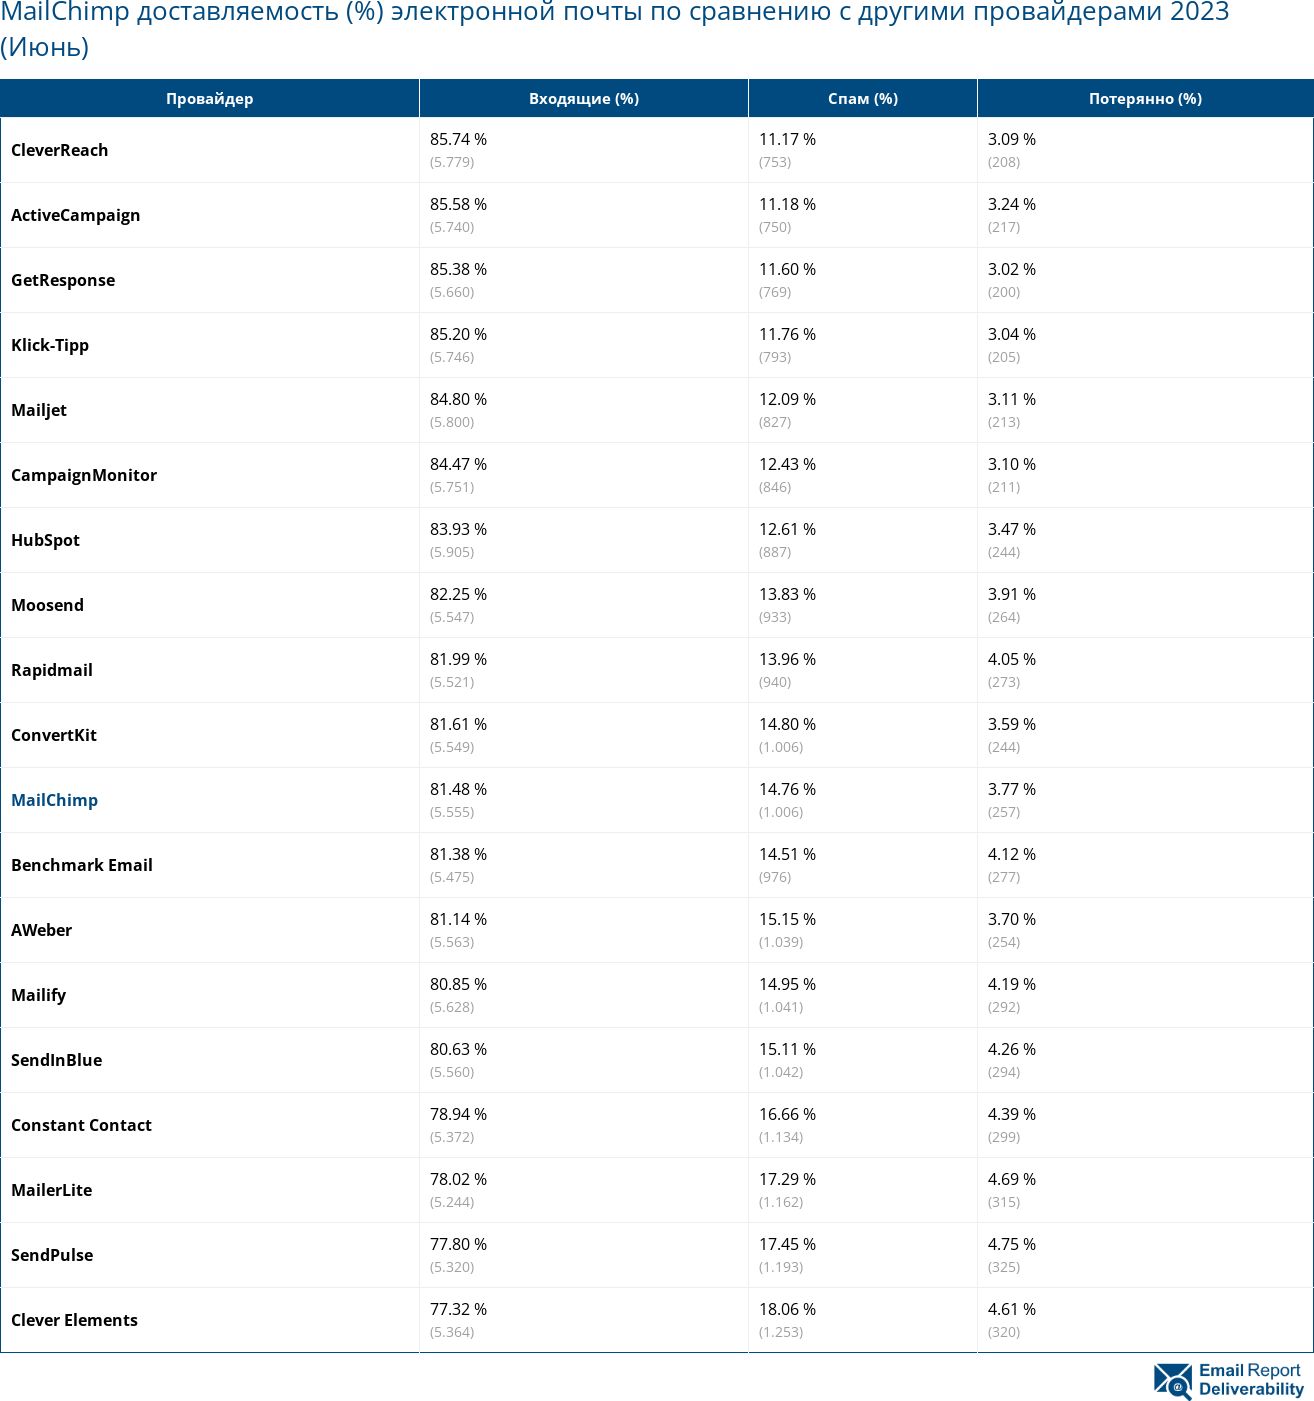 MailChimp доставляемость (%) электронной почты по сравнению с другими провайдерами 2023 (Июнь)